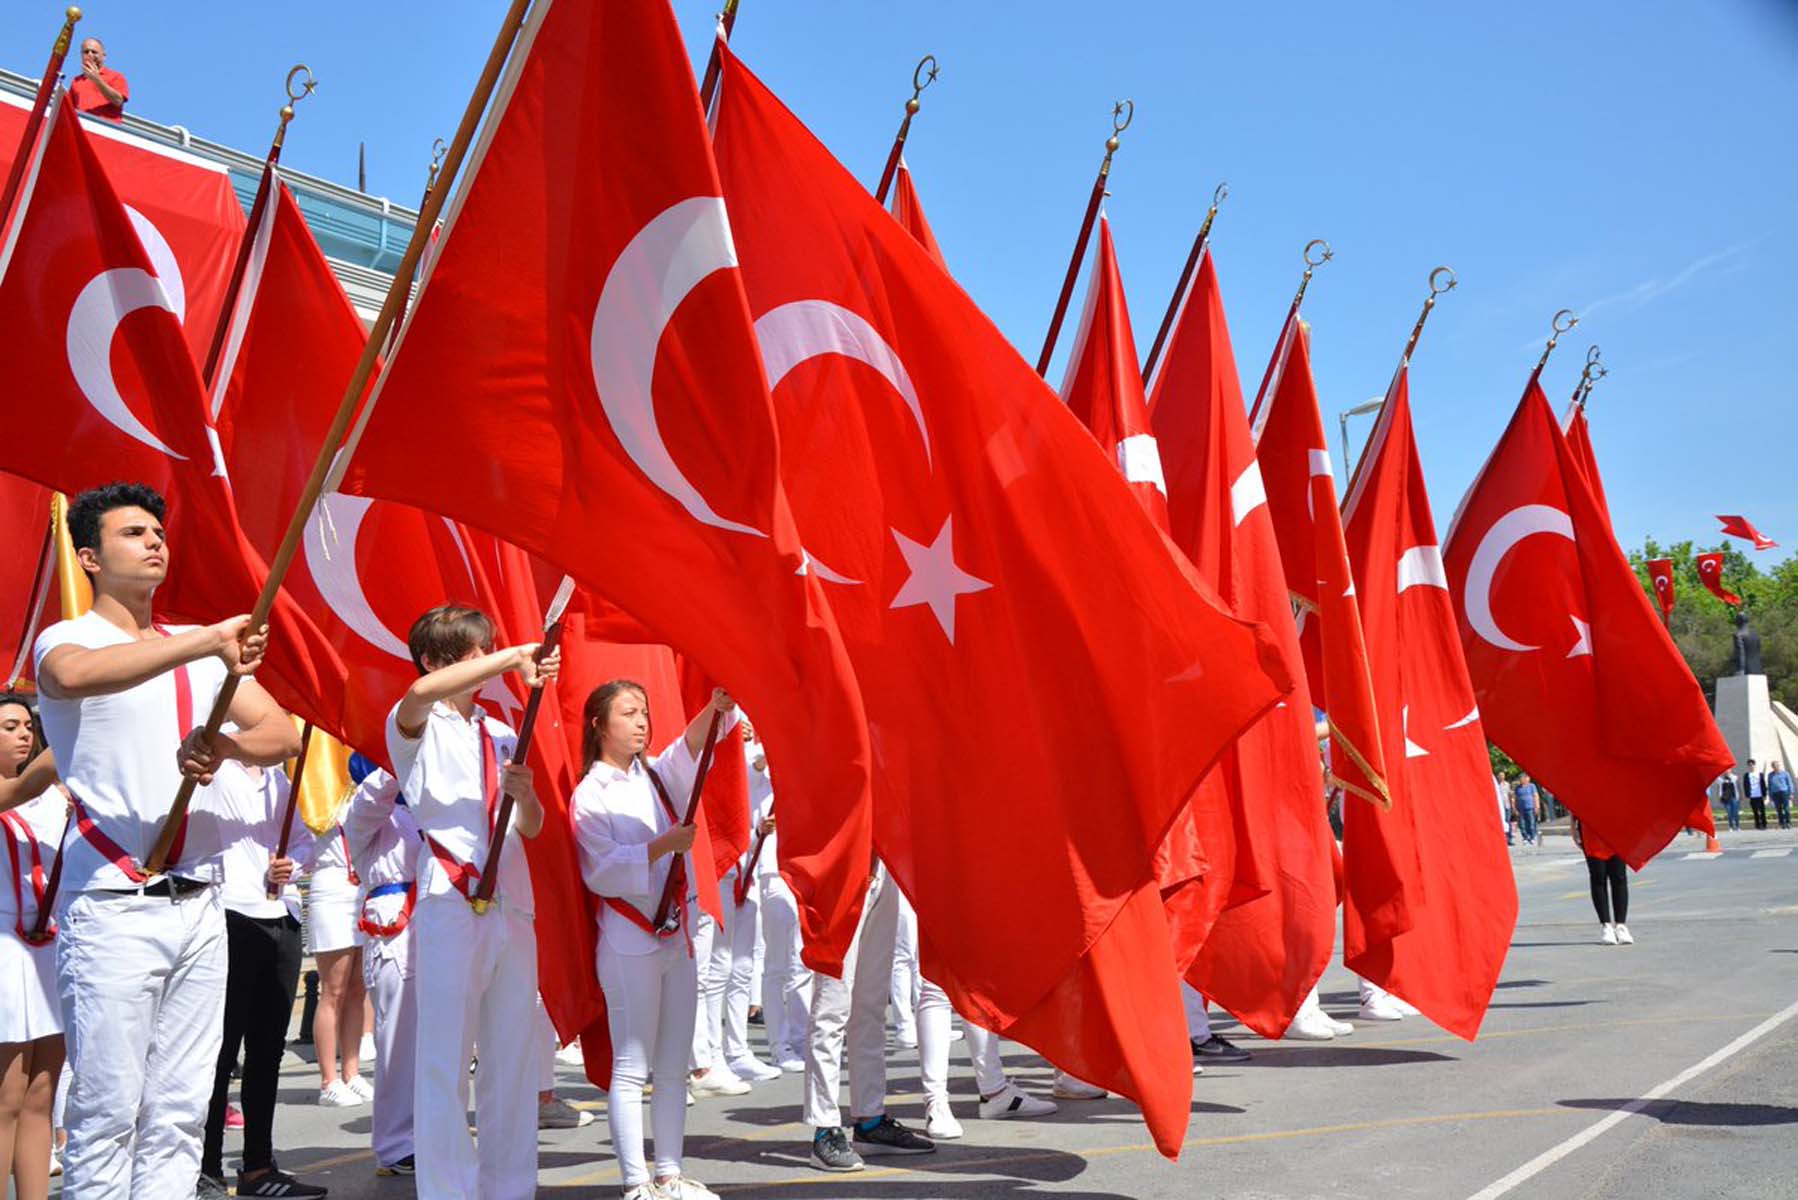 19 мая 2020 г. 19 Mayis. 19 Мая в Турции. Турция на майские. Турция на майские праздники.